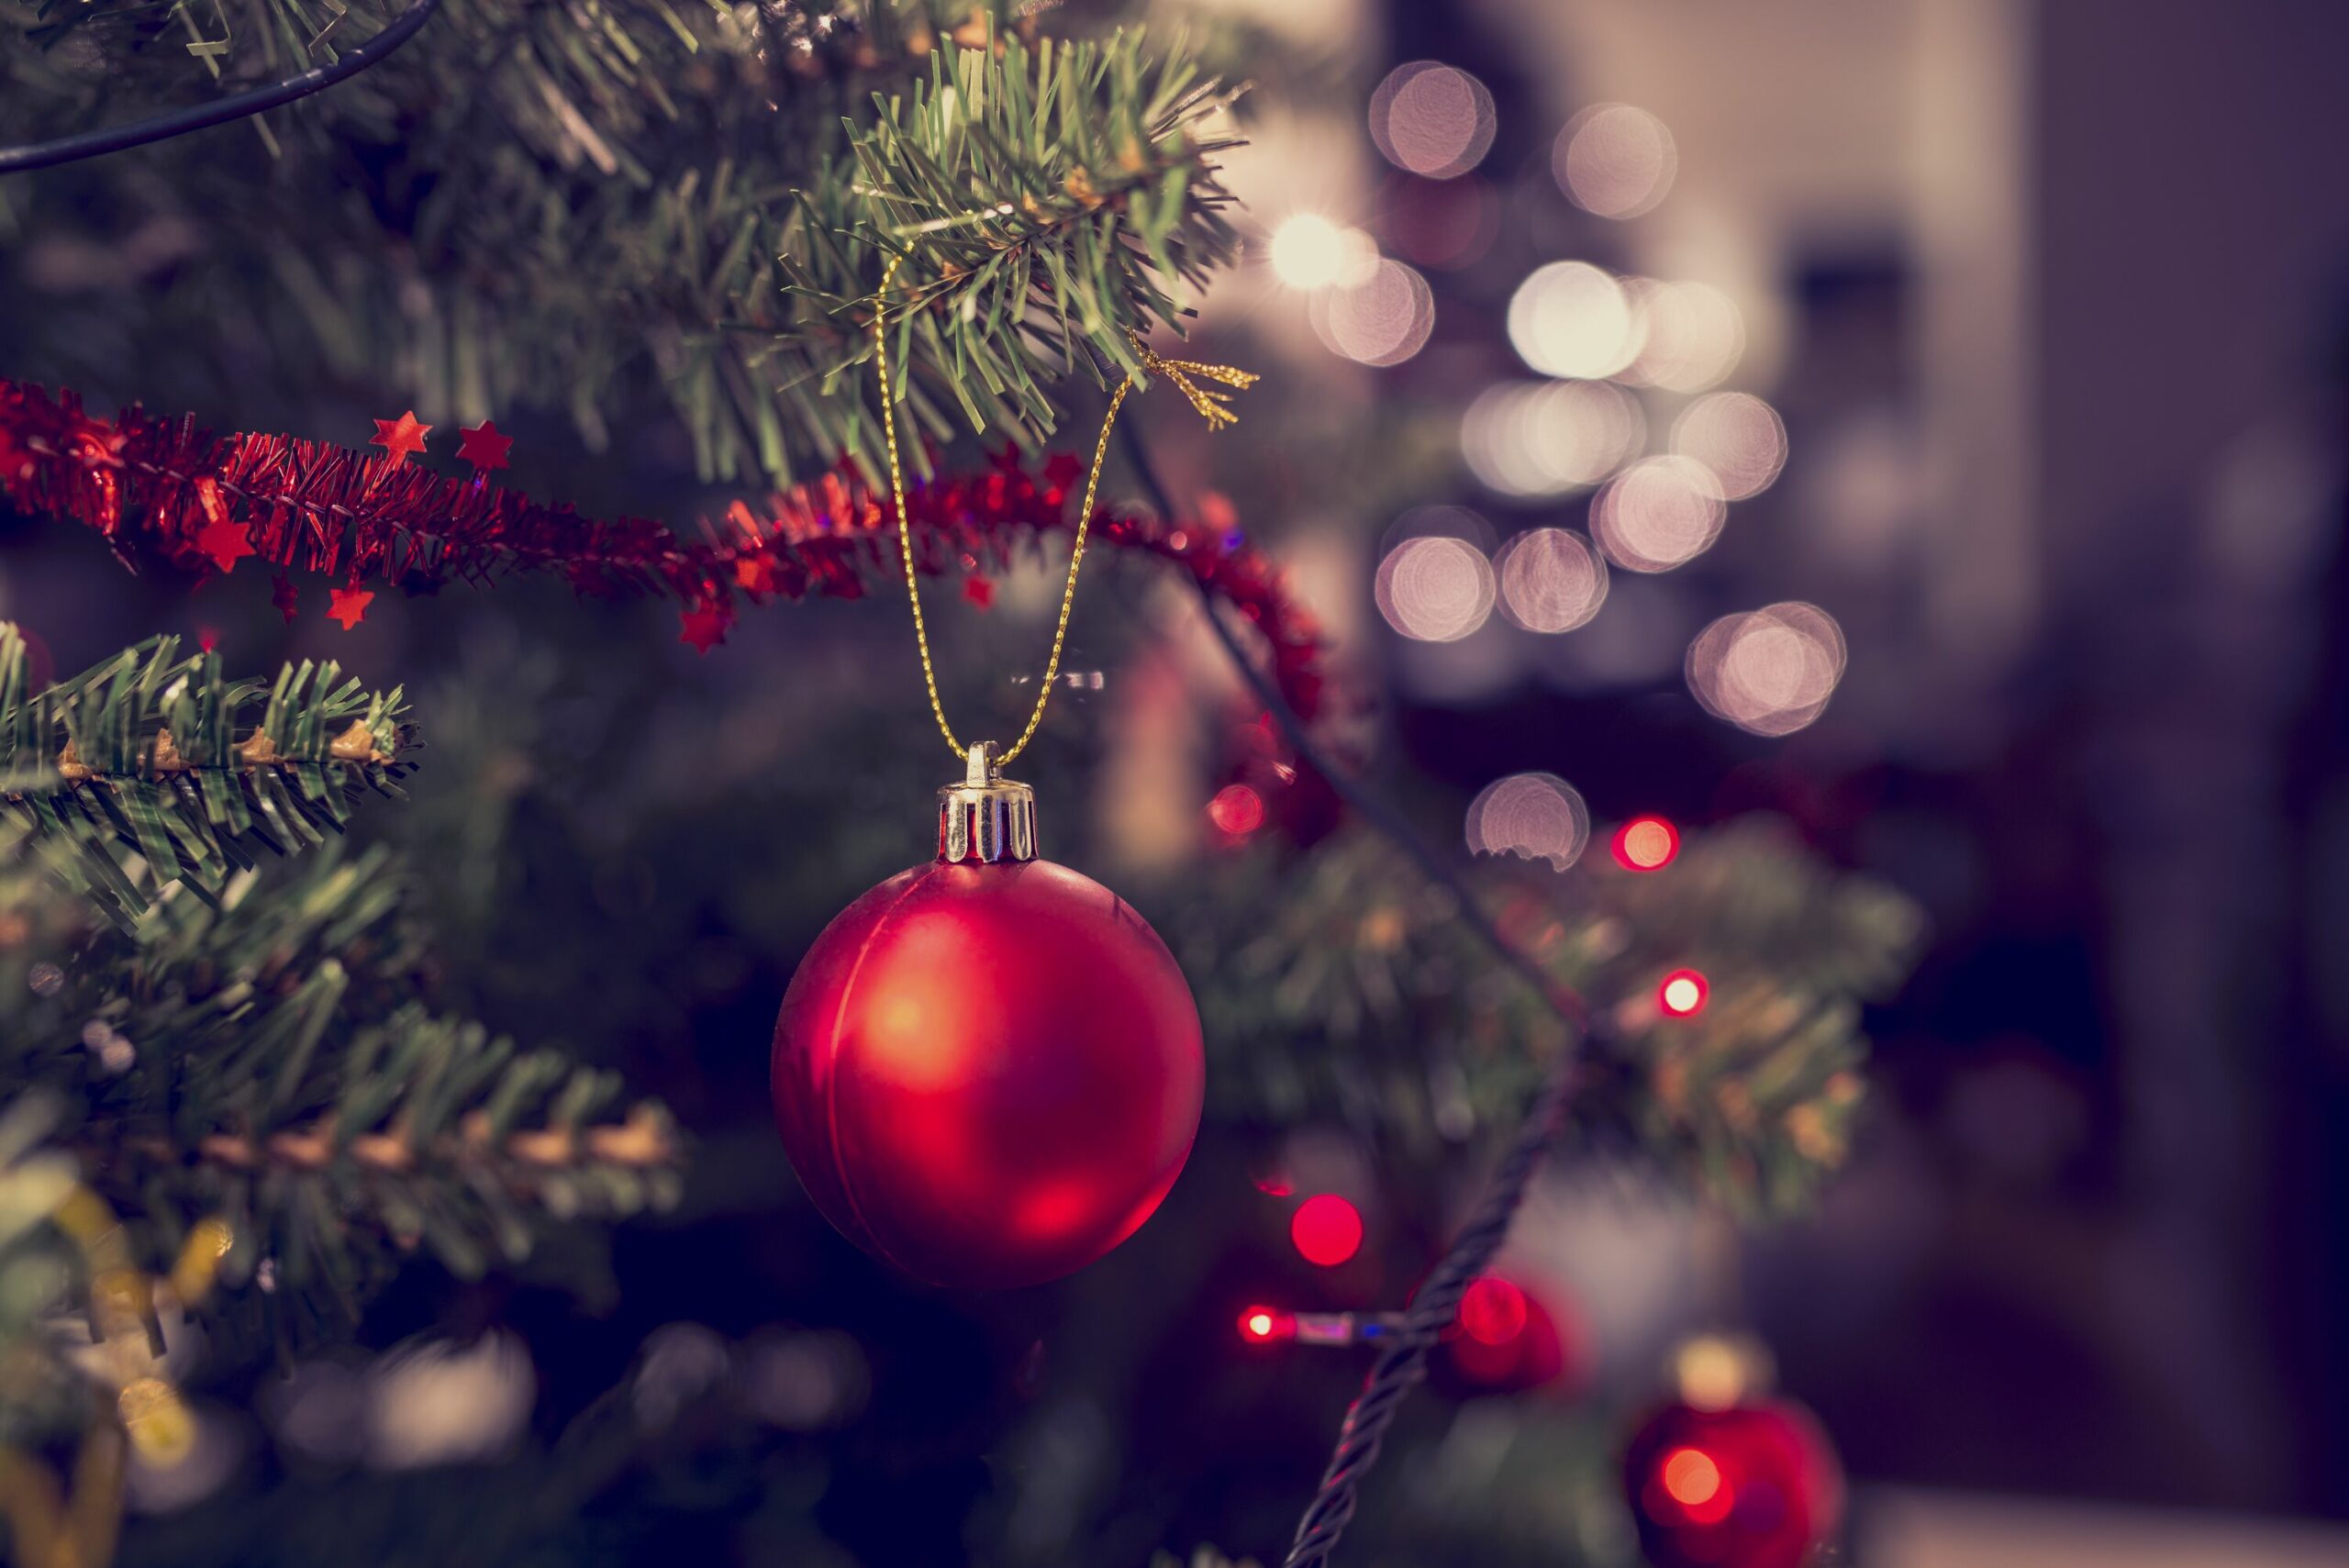 Detail einer roten Christbaumkugel, die an einem verzierten Weihnachtsbaum hängt.